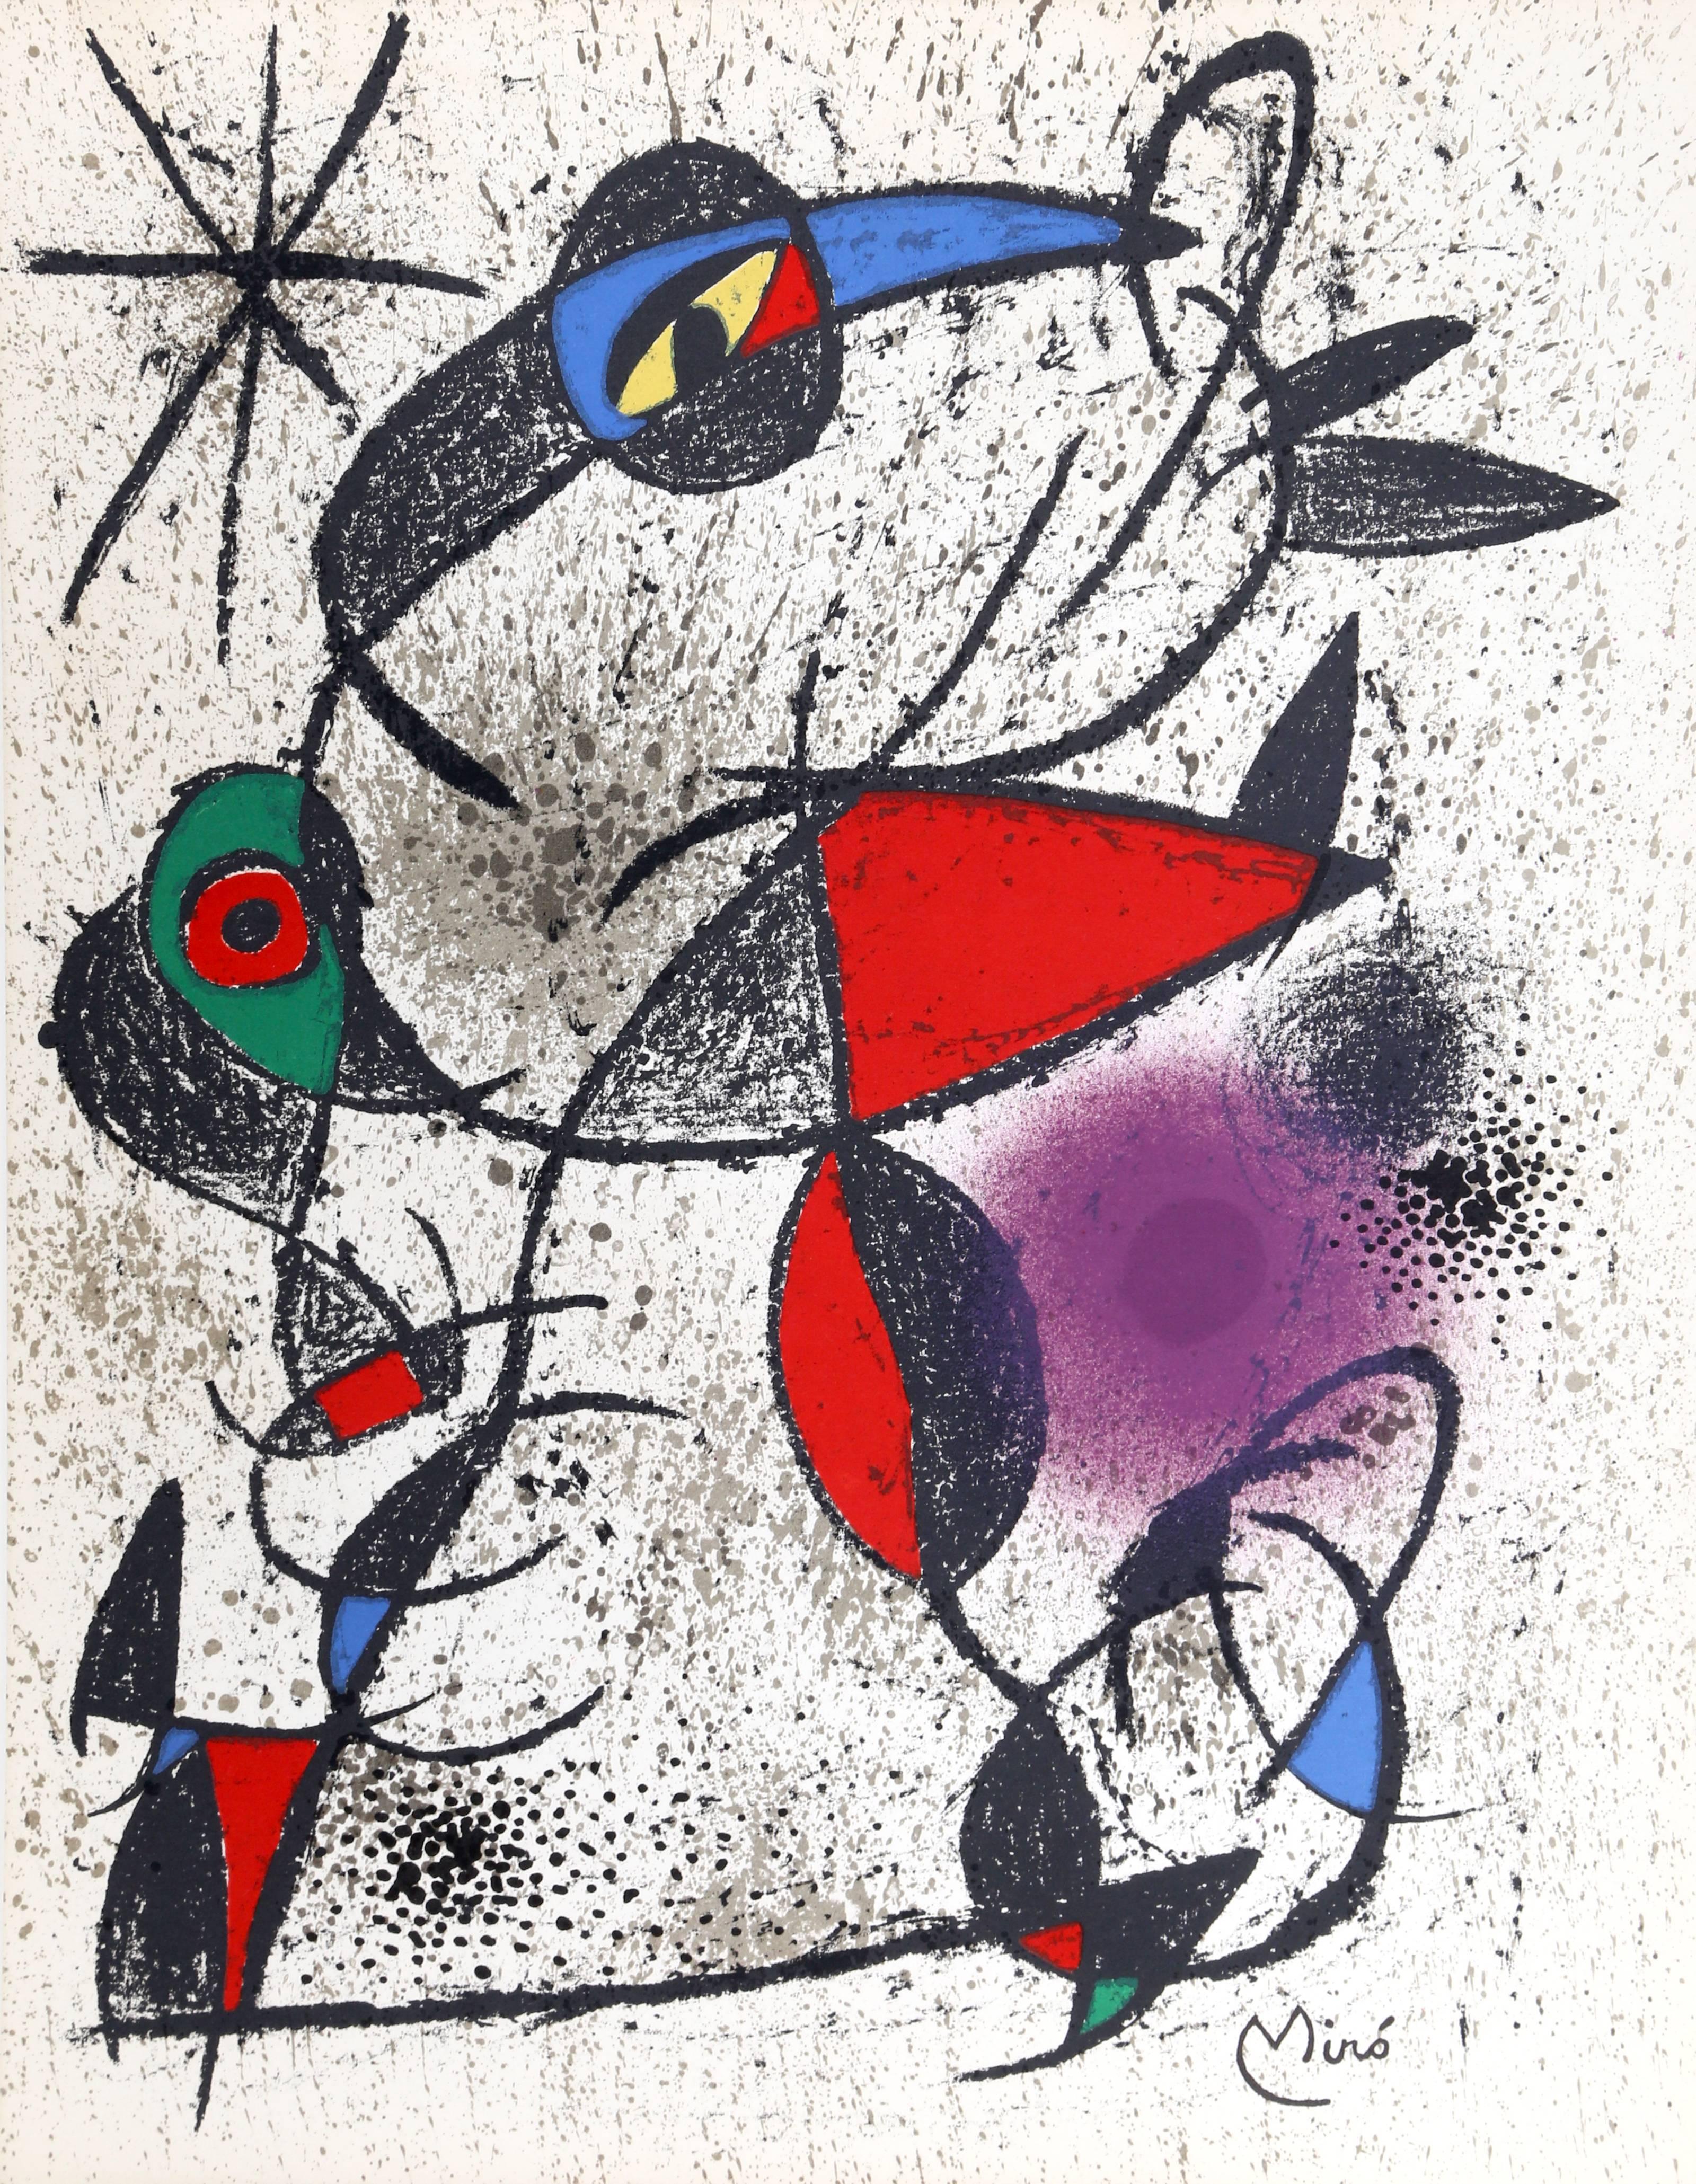 Jaillie du Calcaire aus Souvenirs de Portraits d'Artistes von Joan Miro (Moderne), Print, von Joan Miró